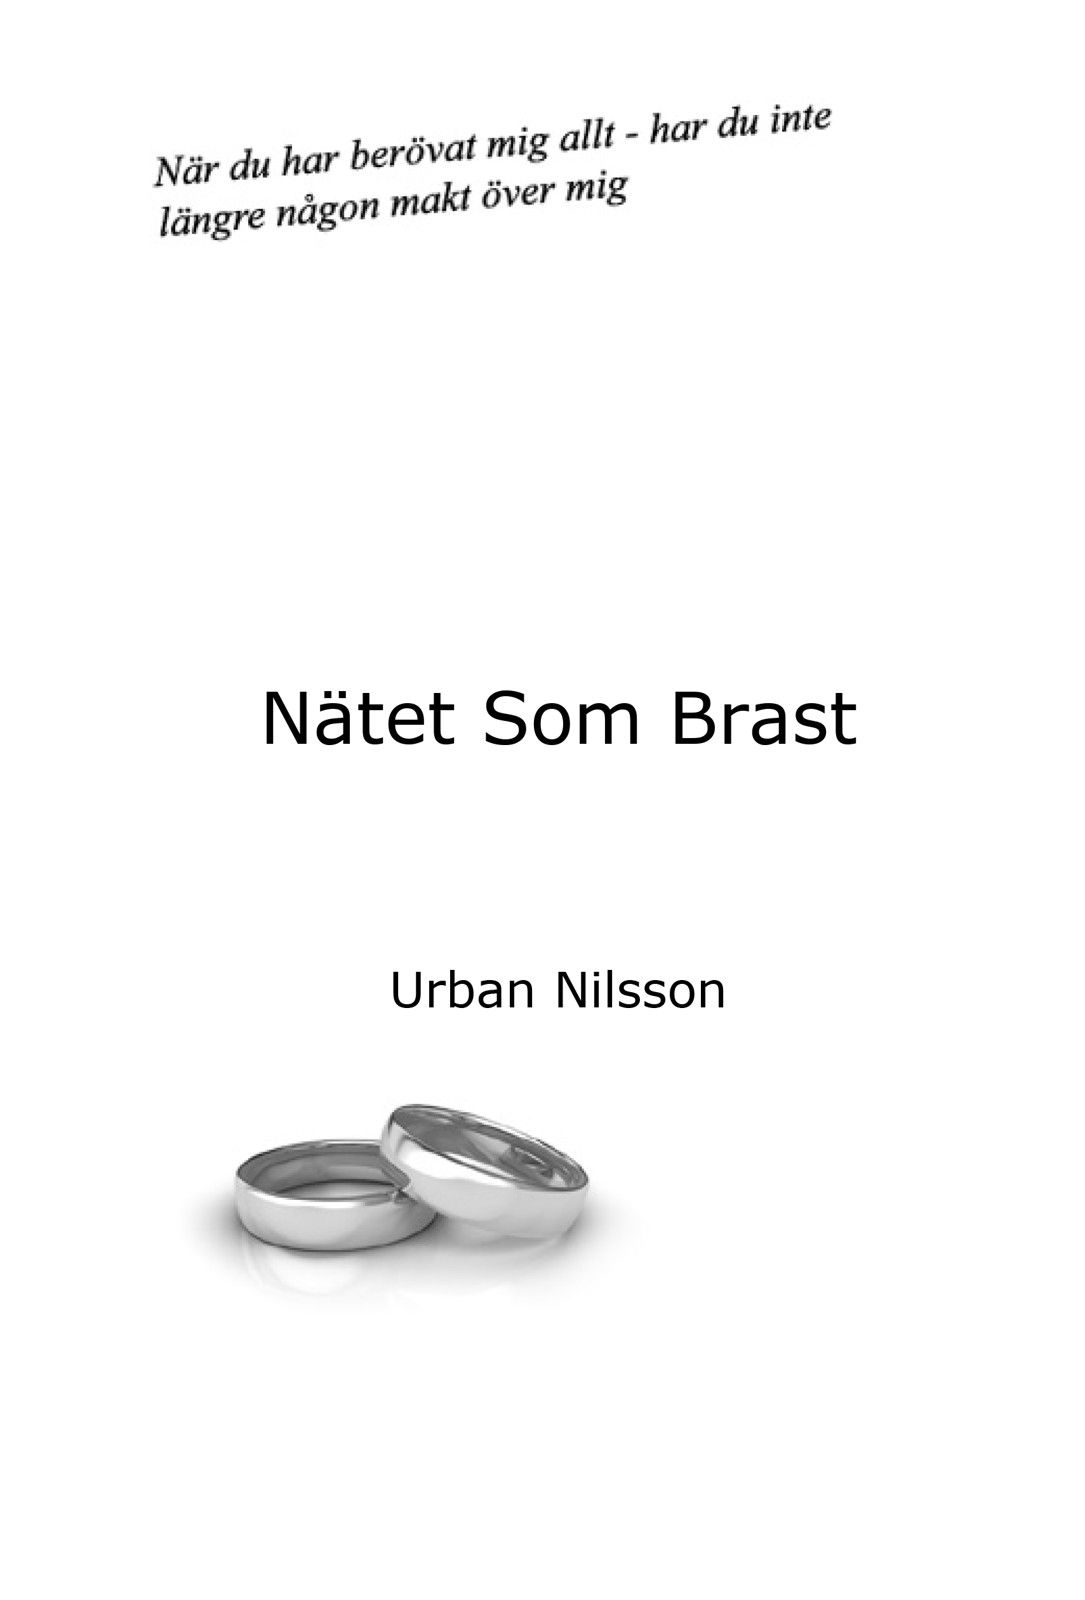 Nätet som Brast, e-bog af Urban Nilsson